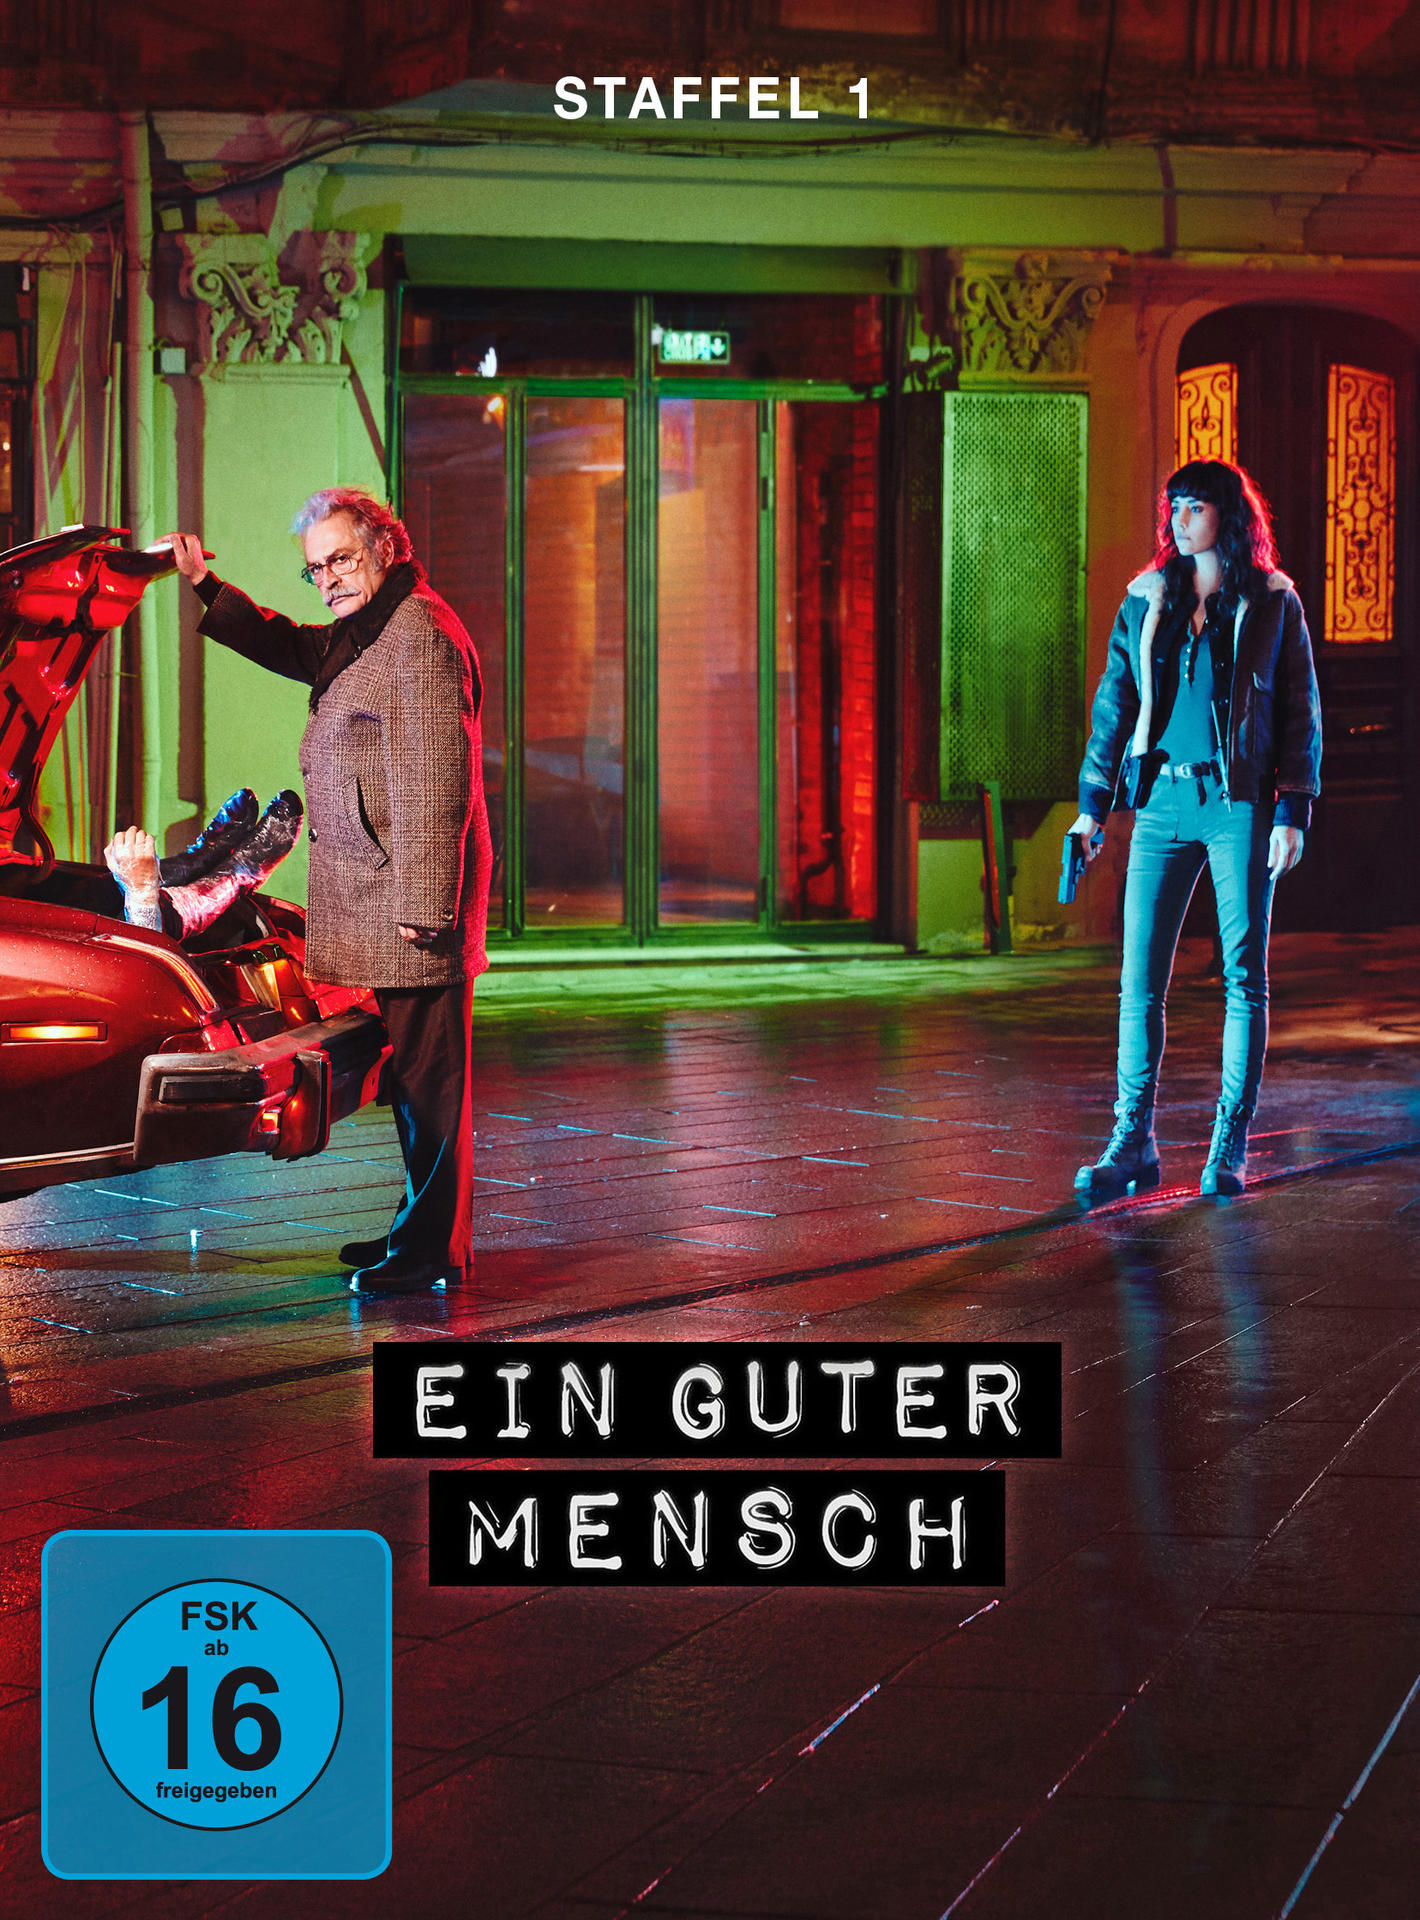 1 Staffel Ein guter Mensch - DVD